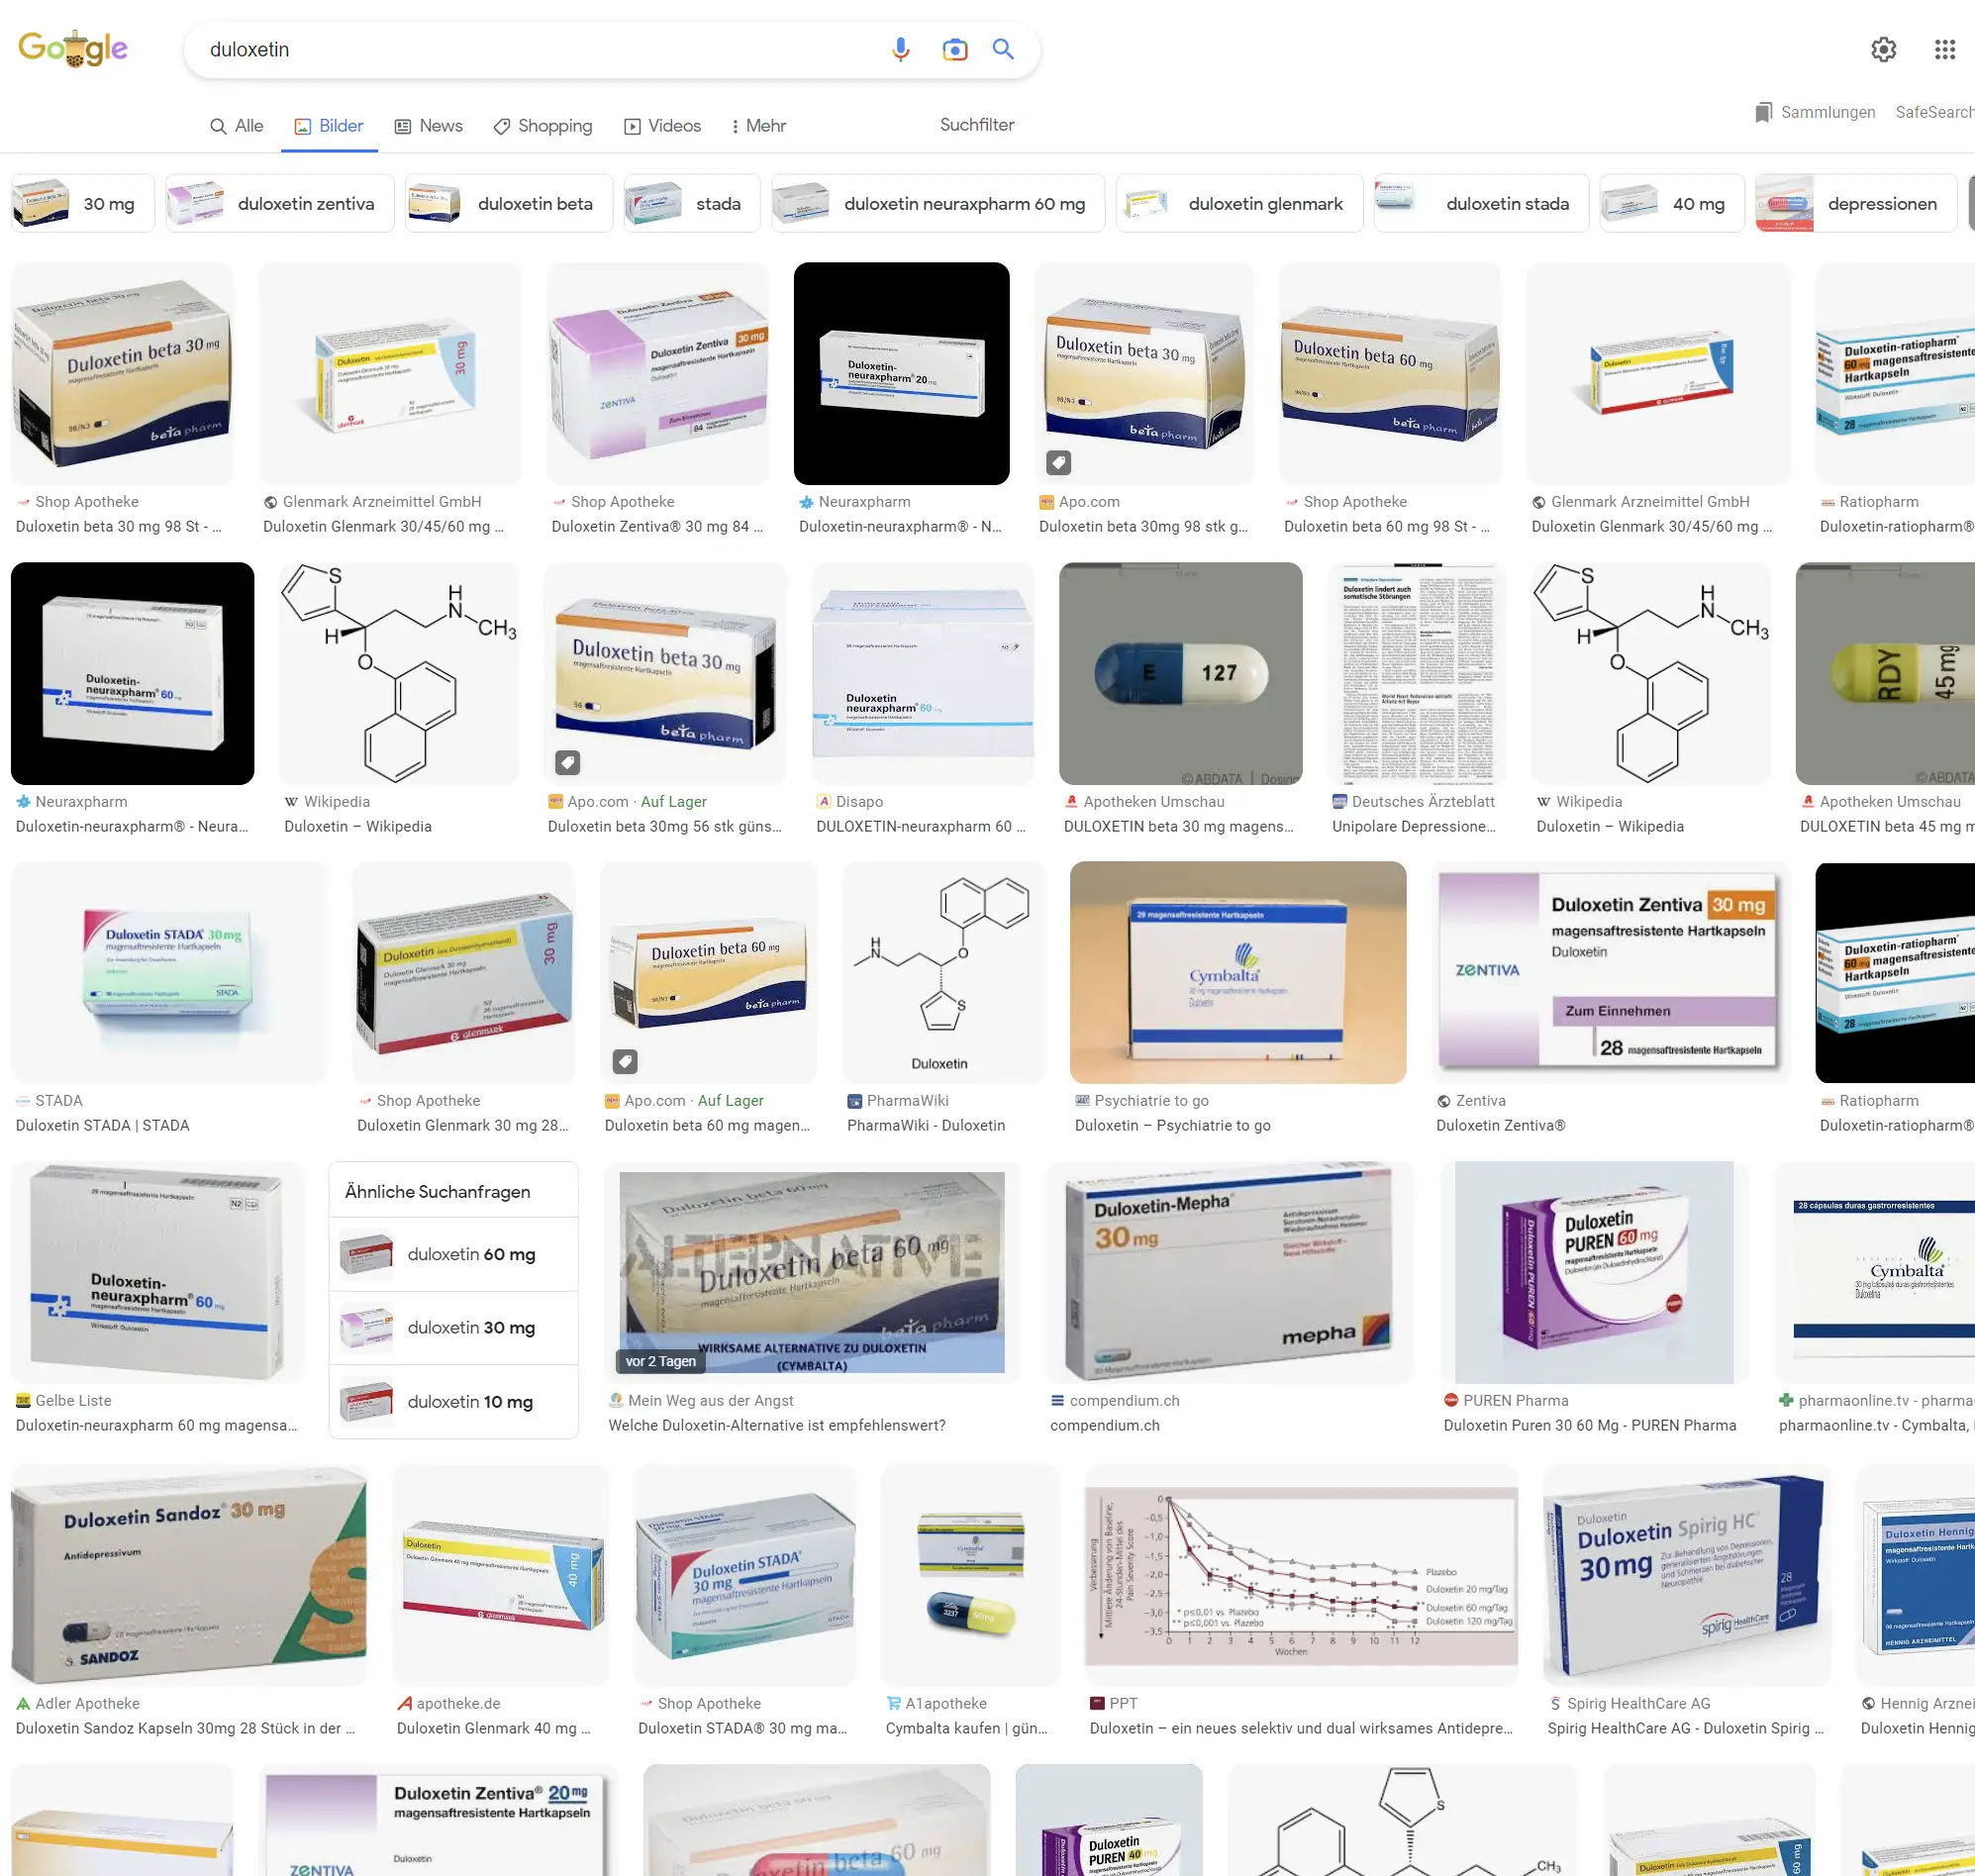 Stada, Ratiopharm, Hennig, Zentiva, beta, Mepha, Glenmark u.v.a. - die Google Bildersuche zeigt, wie viele Hersteller es für Duloxetin auf dem Markt gibt...